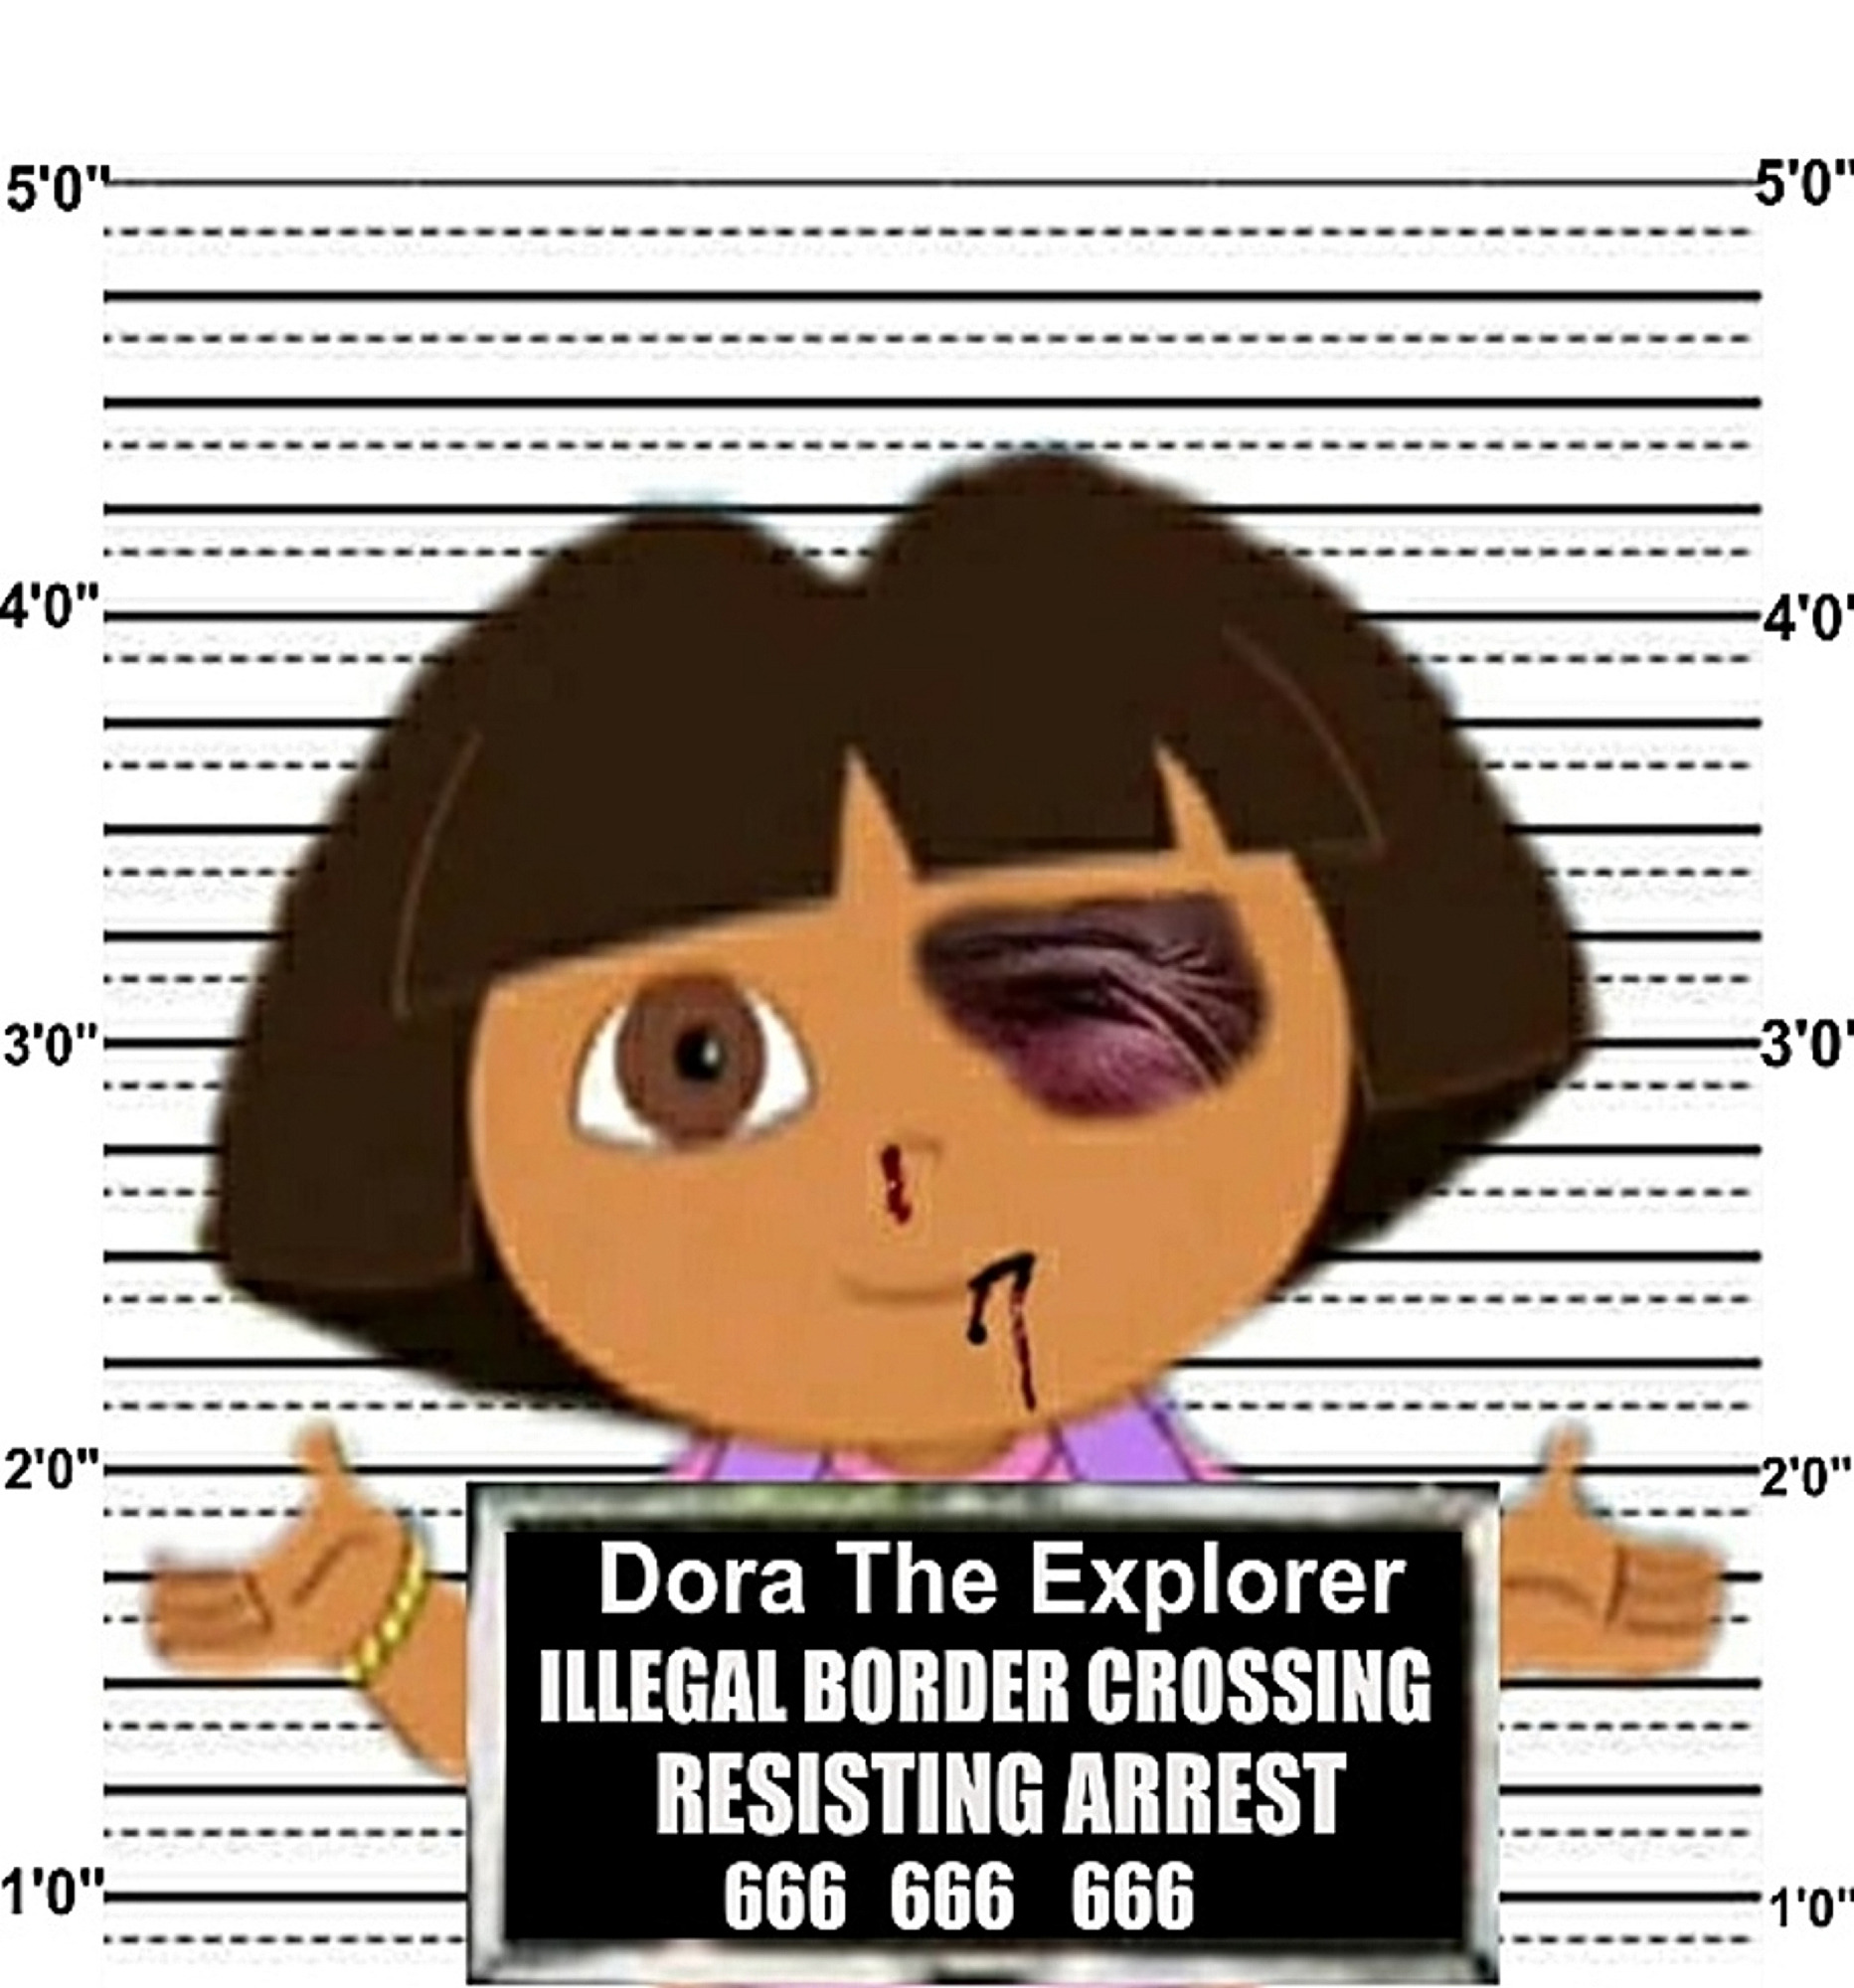 binge watching Dora? That's illegal